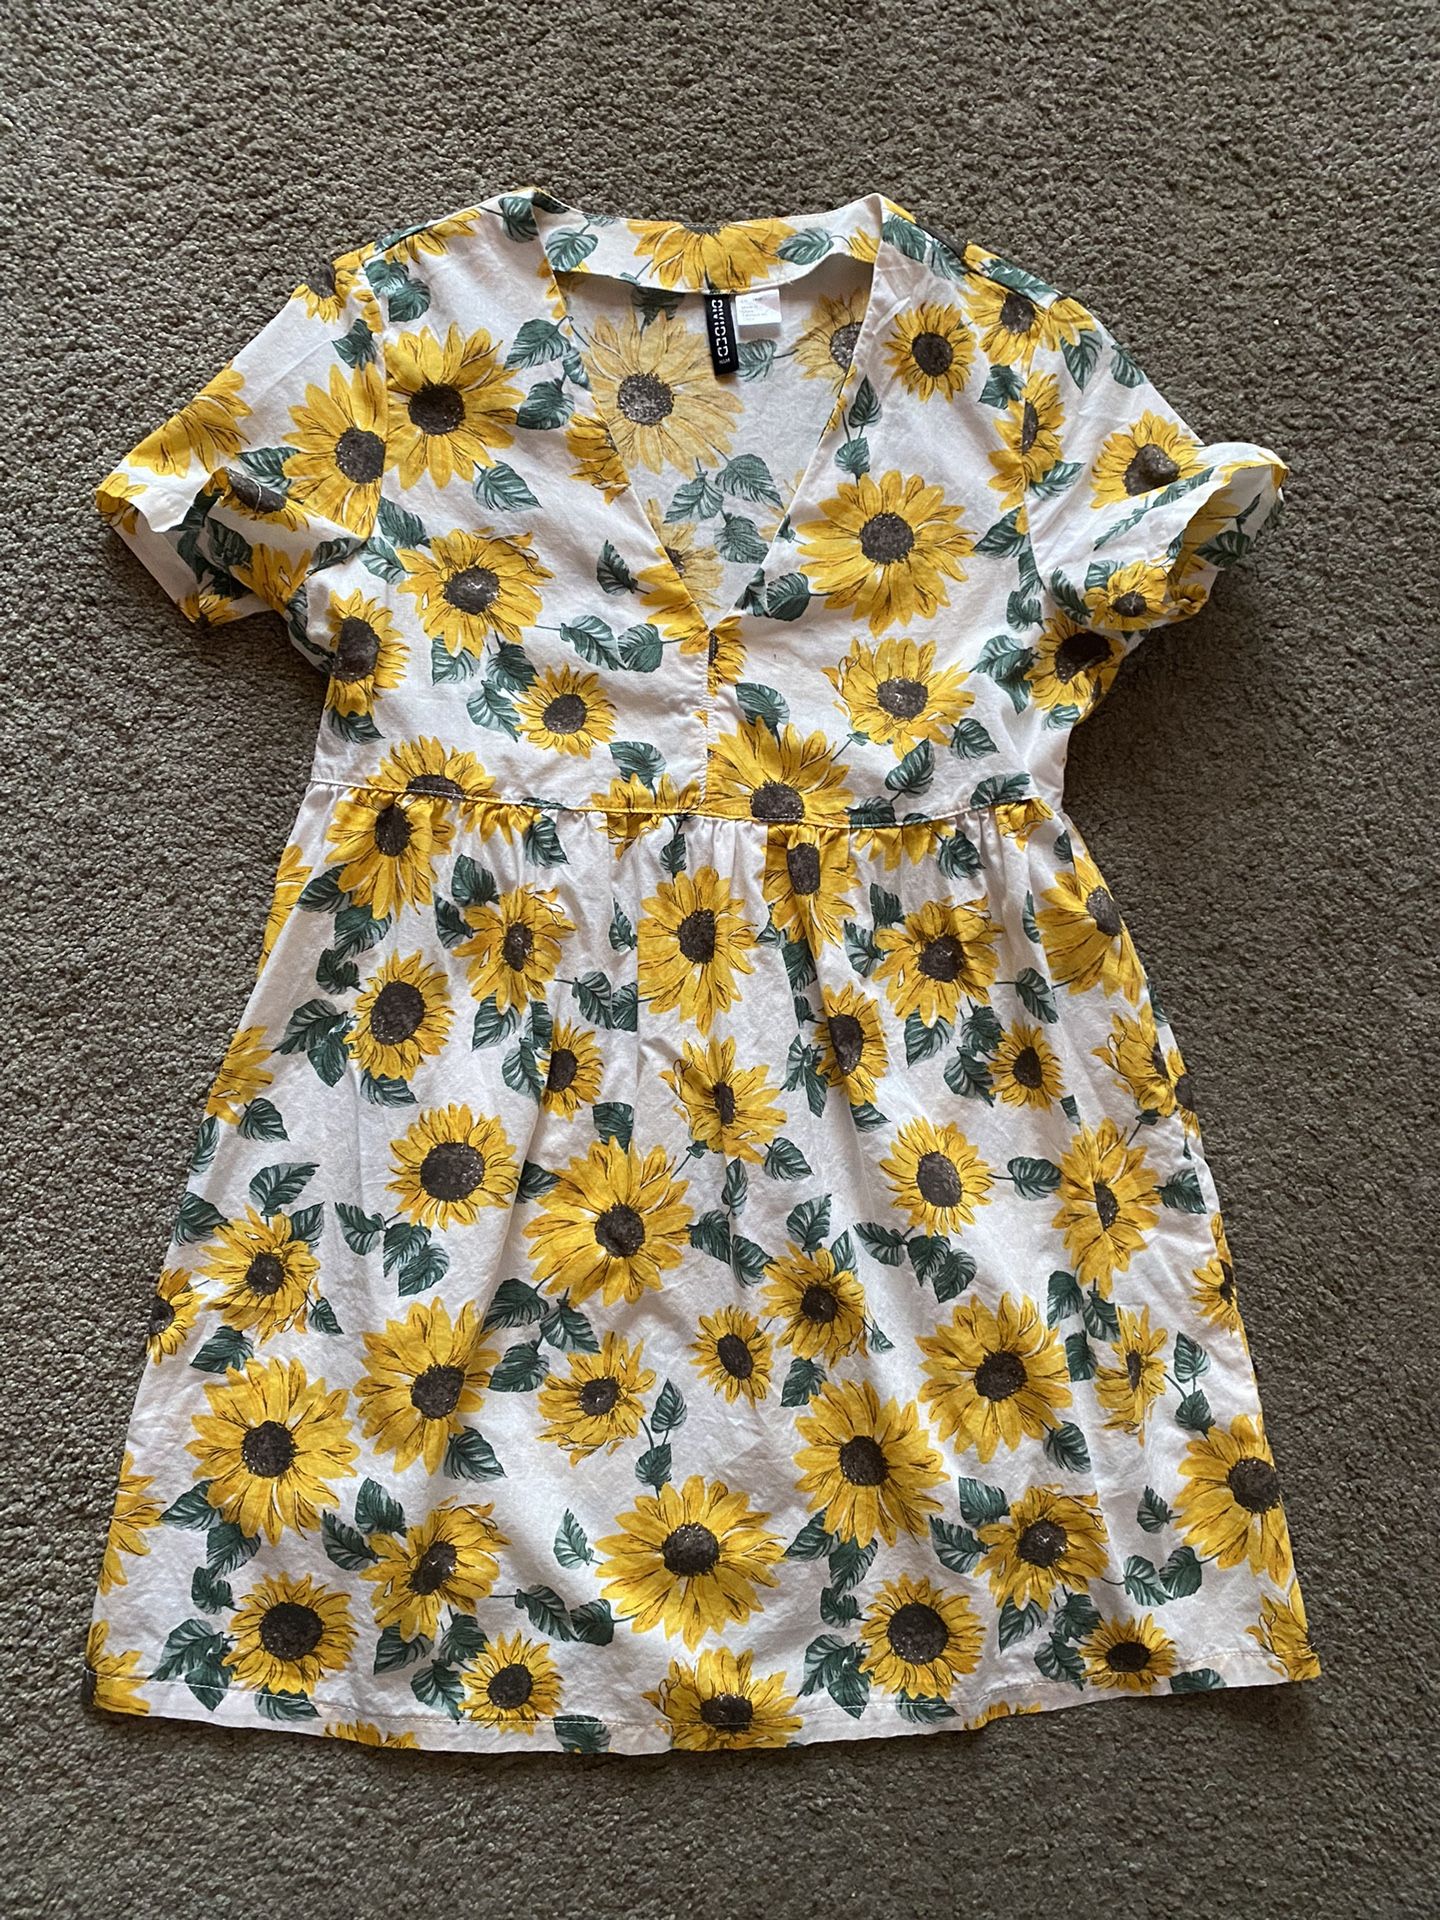 H&M Divided Sunflower Dress/Sunflower Tunic Top 